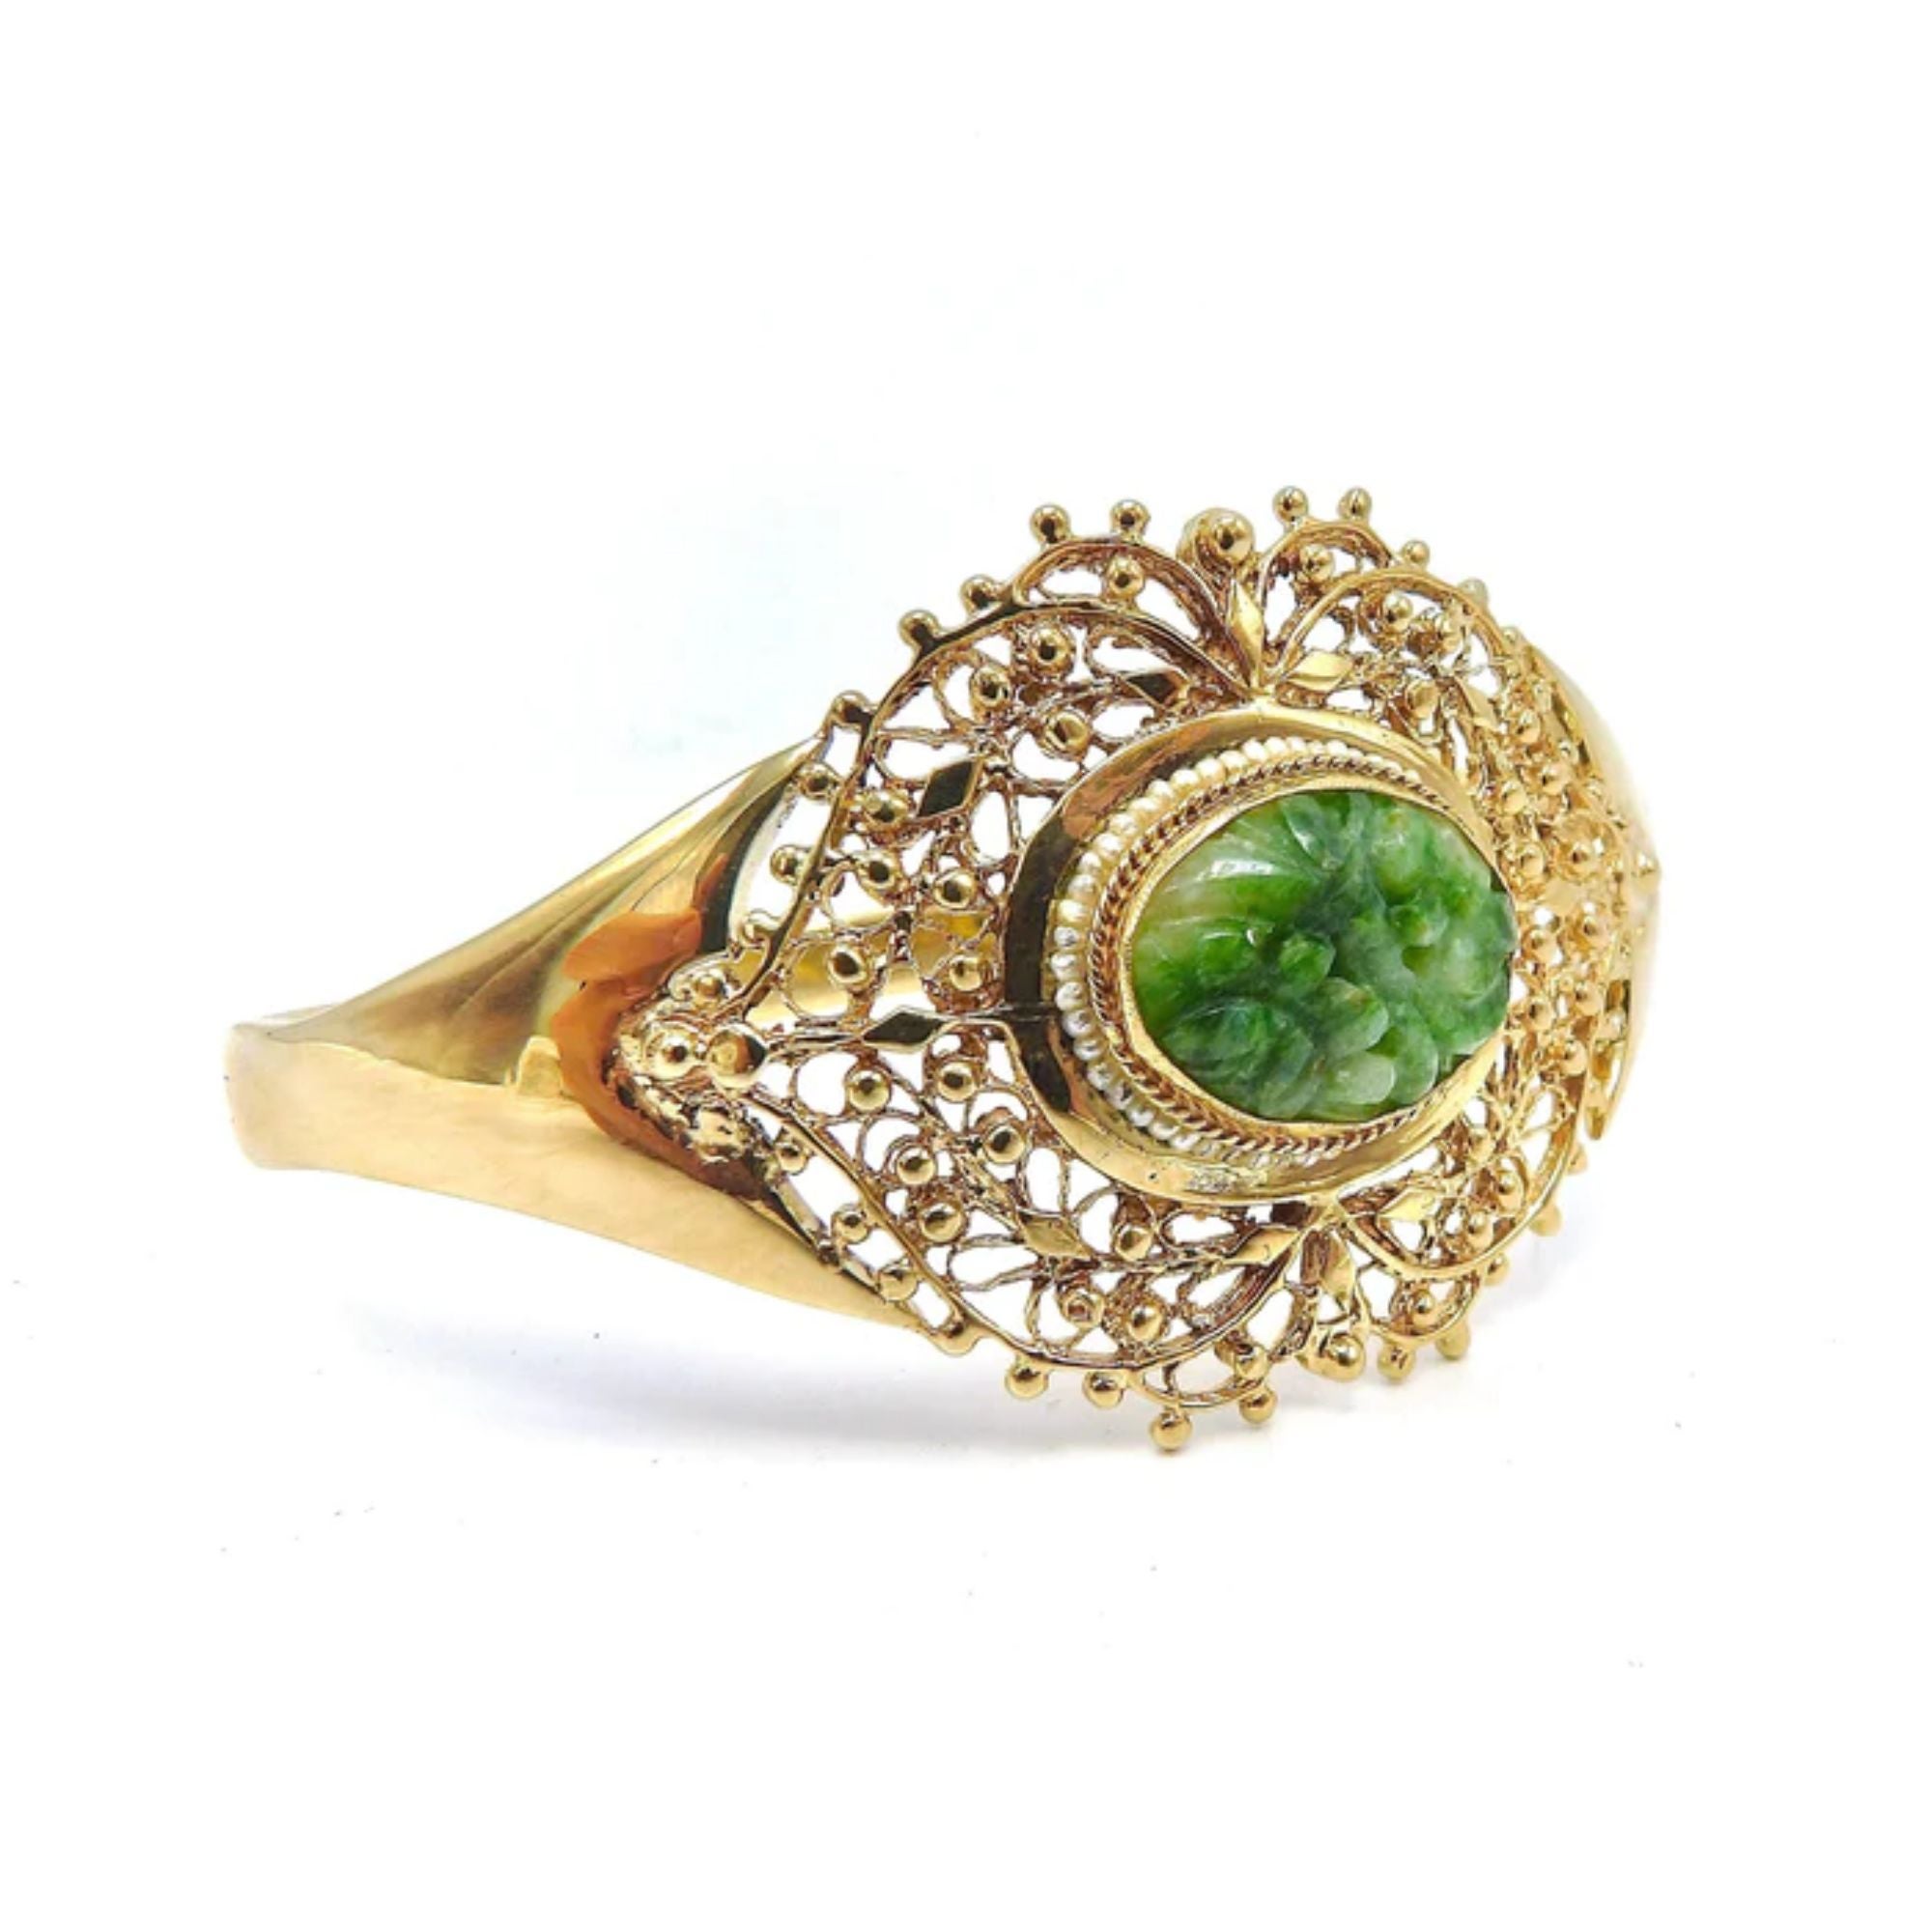 Dieses elegante Armband ist aus 14-karätigem Gold gefertigt und mit einem zentralen, netzartigen Stück grüner Jade verziert. Das zentrale Jadestück ragt etwa 1/4 Zoll aus der Goldfassung heraus und ist mit Blumenmustern geschnitzt. Ein schöner Ring